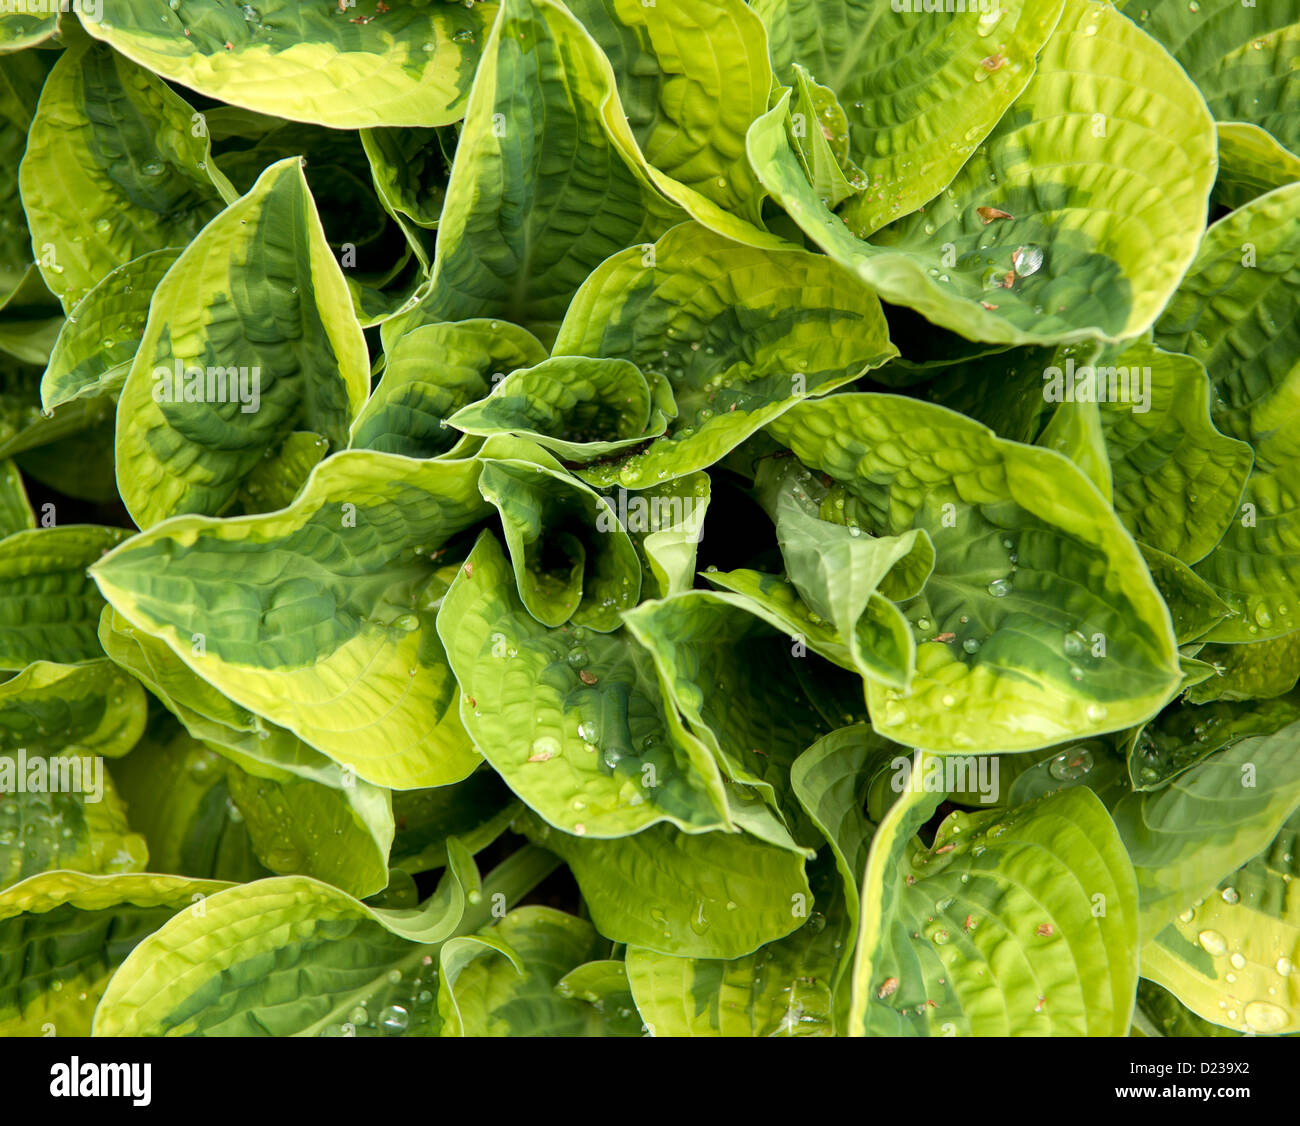 Eine Hosta Pflanze mit bunten Blättern Stockfoto